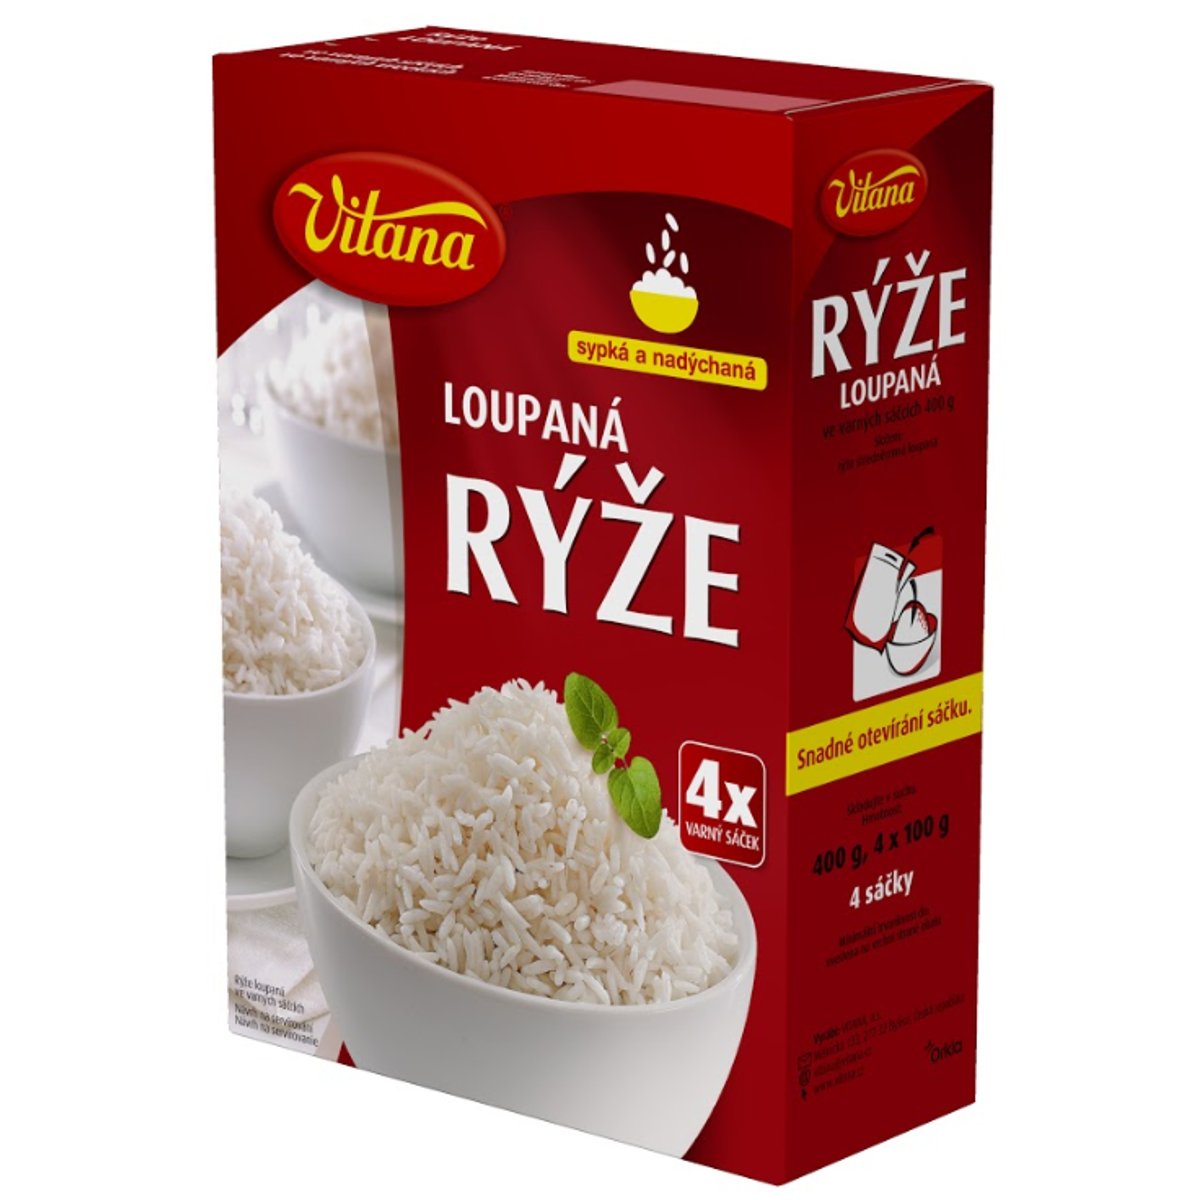 Vitana Rýže loupaná v sáčcích 4×100g